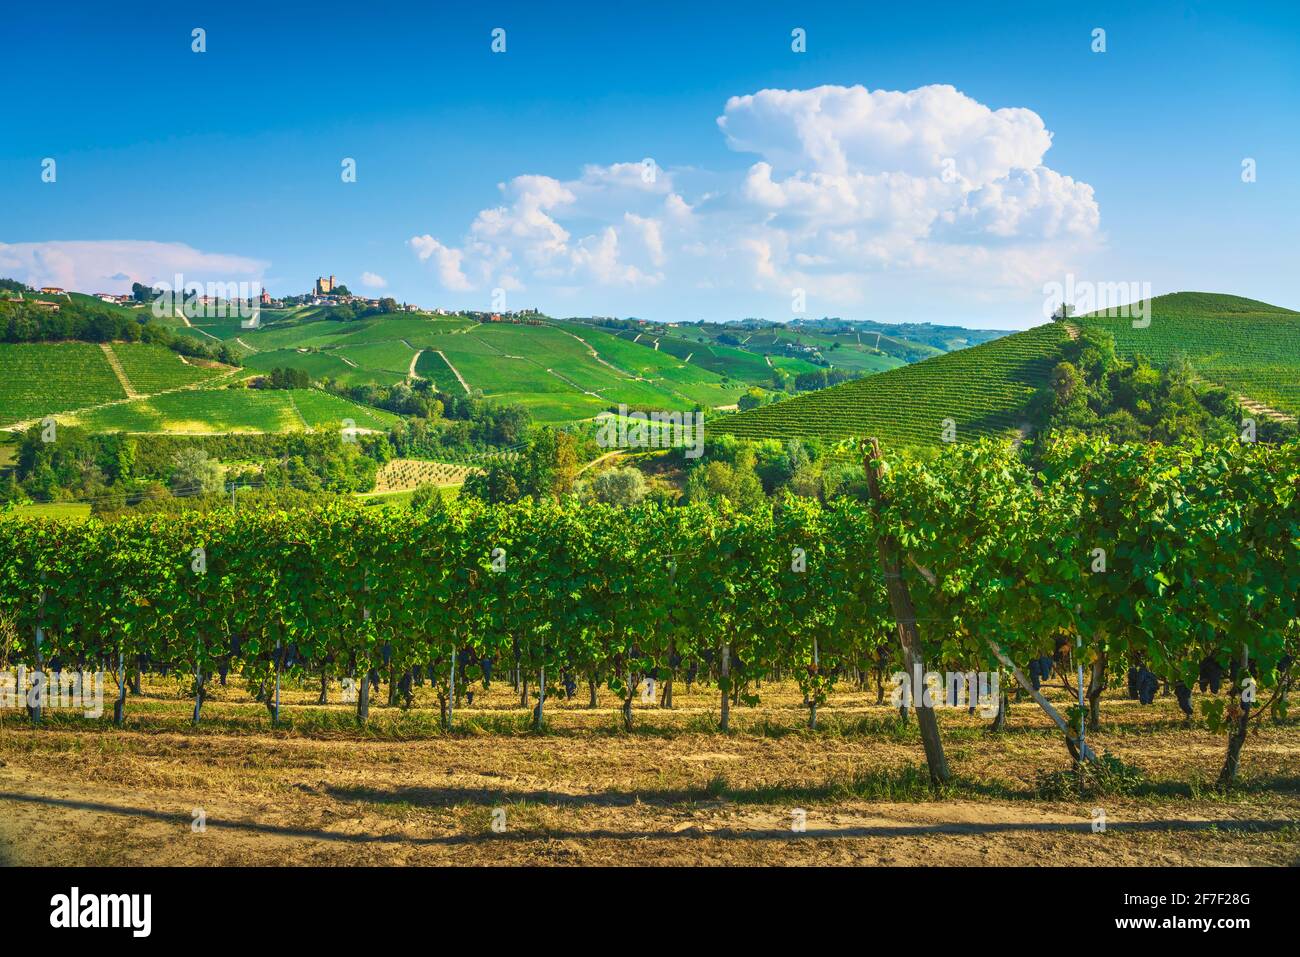 Panorama des vignobles de Langhe, Serralunga d Alba, site de l'UNESCO, Piémont, Nord de l'Italie Europe. Banque D'Images